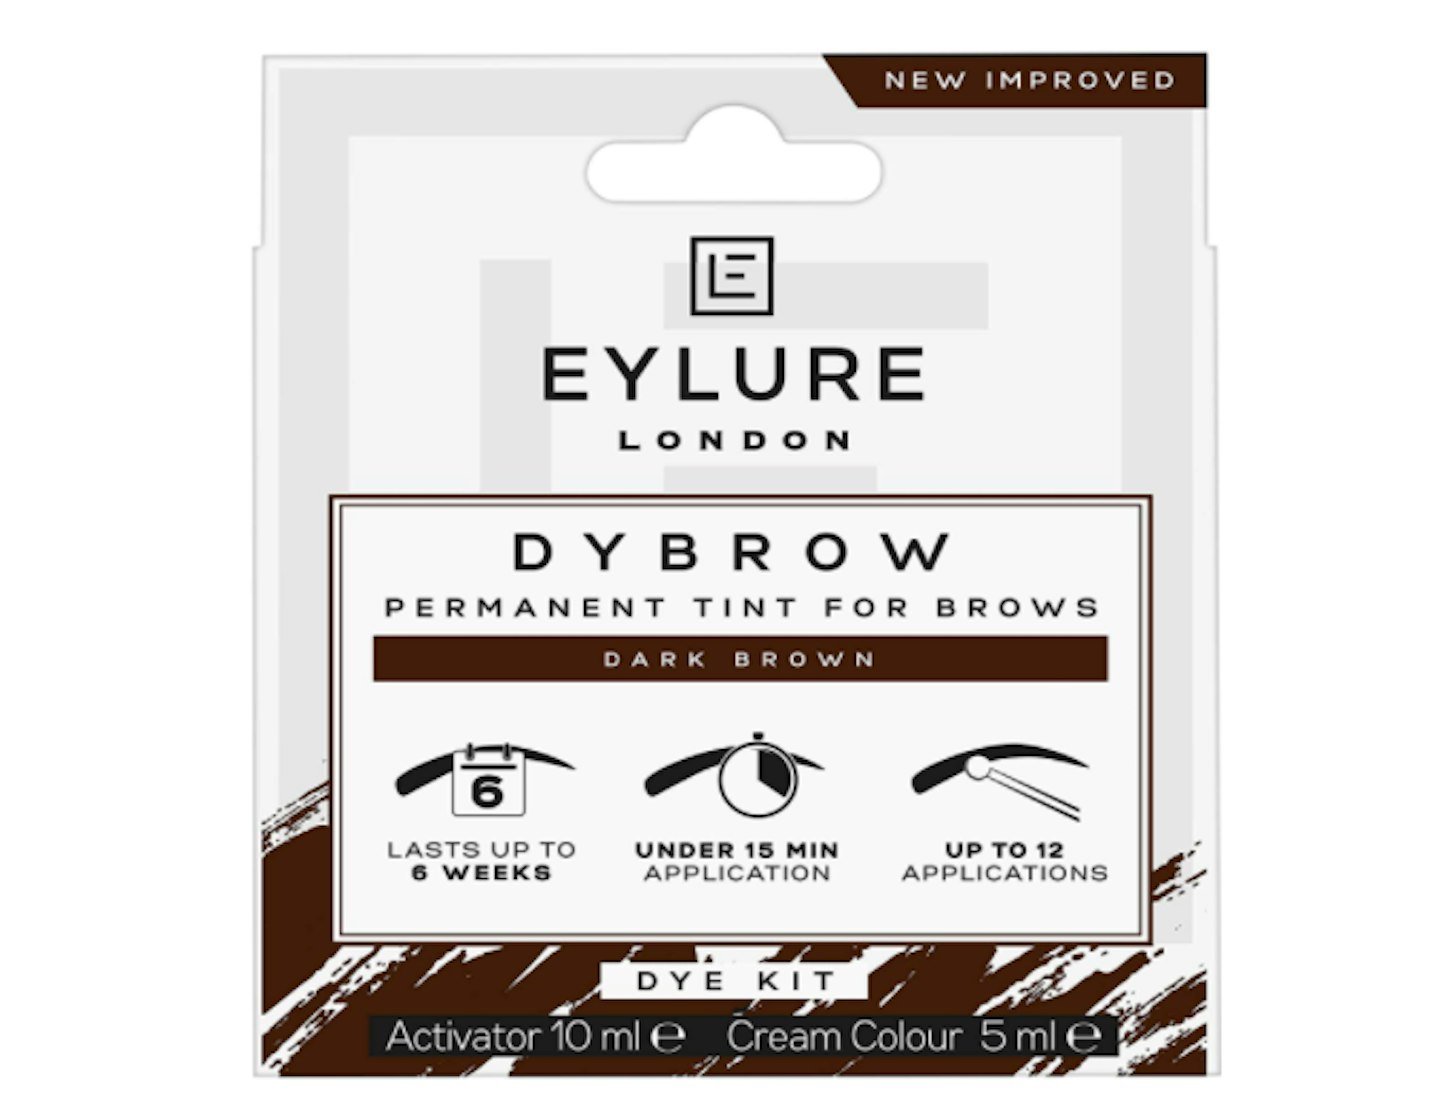 Eylure DYBROW Eyebrow Dye Kit, Dark Brown